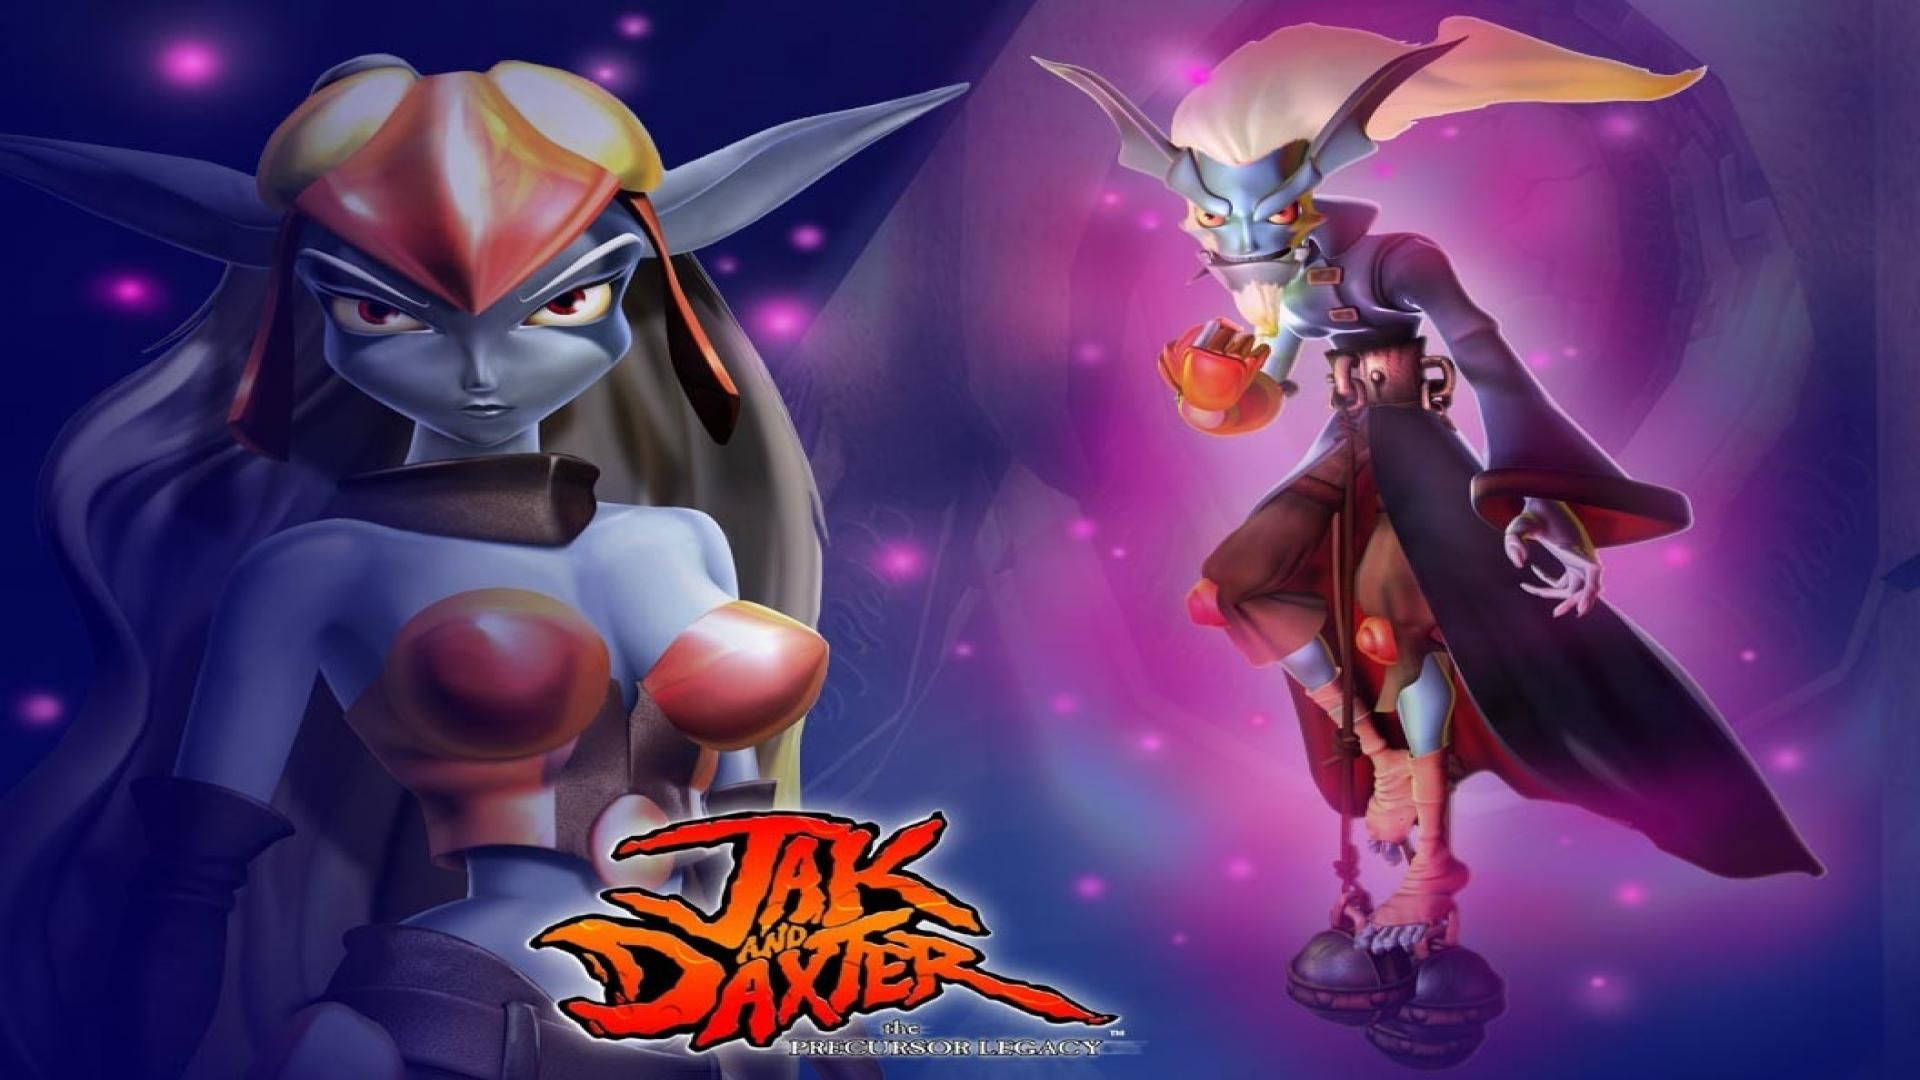 Det ikoniske duo, Jak og Daxter, tager på en magisk eventyr. Wallpaper